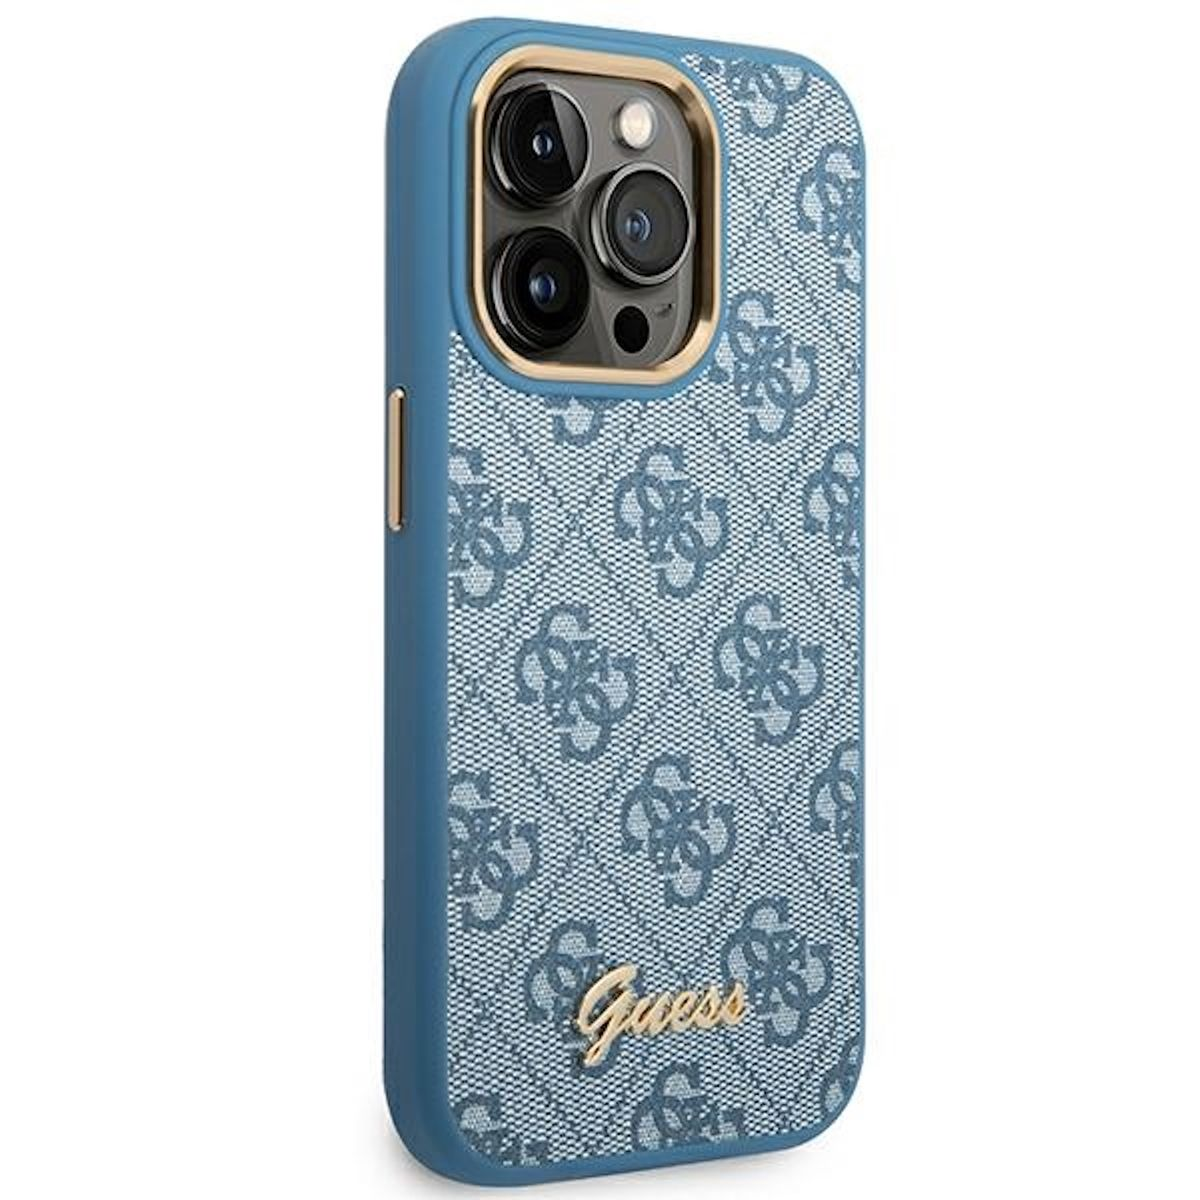 14 Design Kunststoff iPhone 4G Blau GUESS Gold Logo Pro, Vintage Apple, Hülle, Backcover,